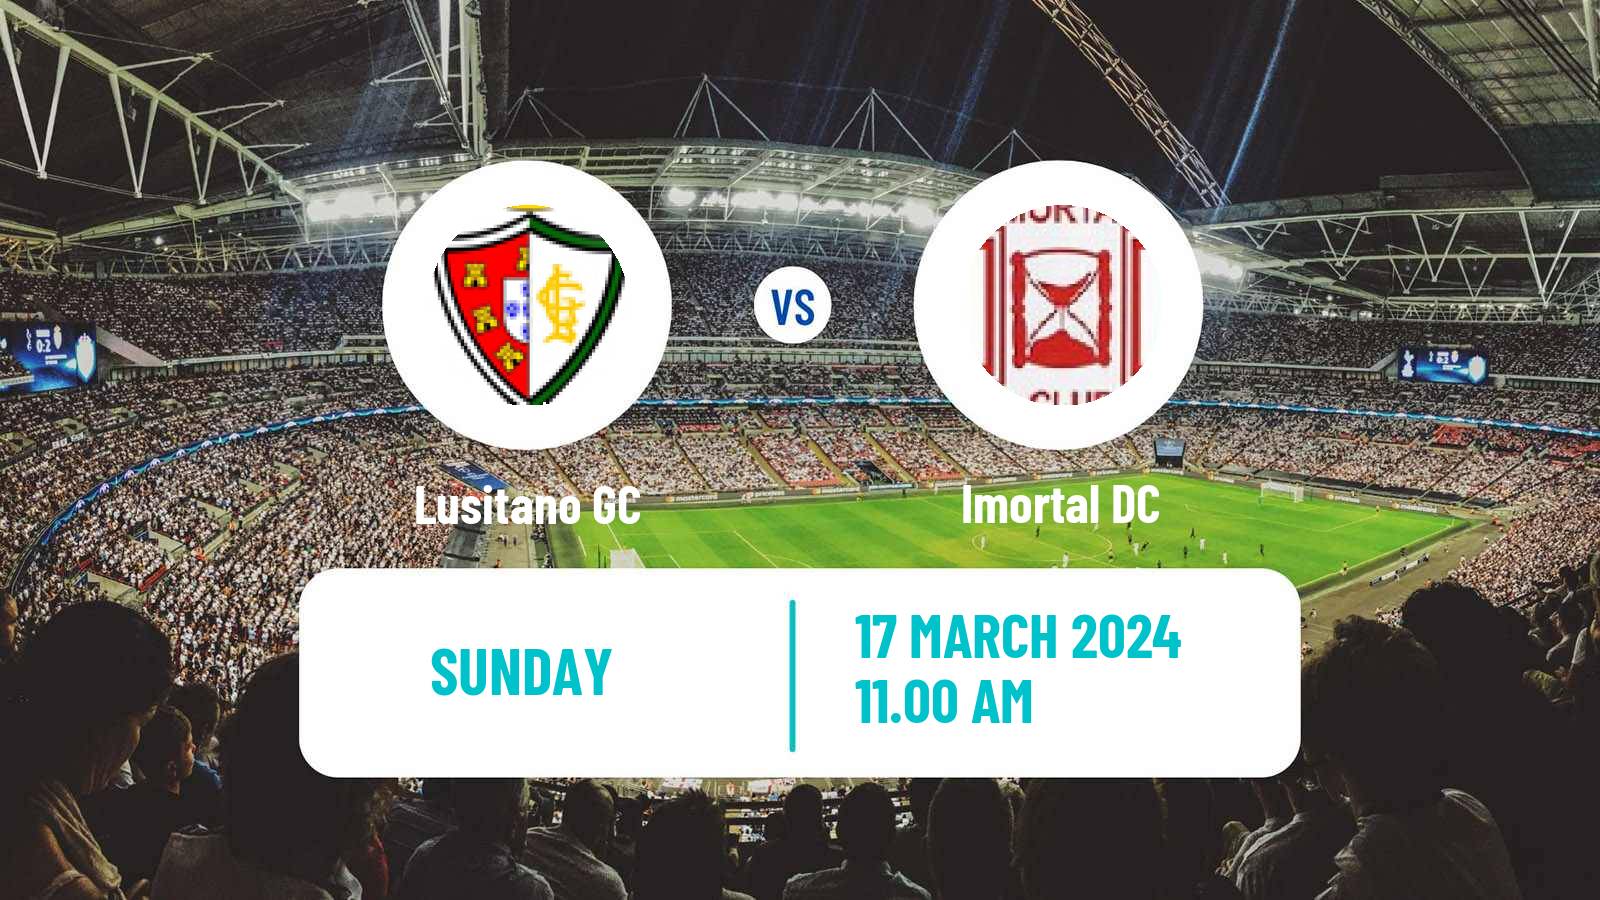 Soccer Campeonato de Portugal - Group D Lusitano GC - Imortal